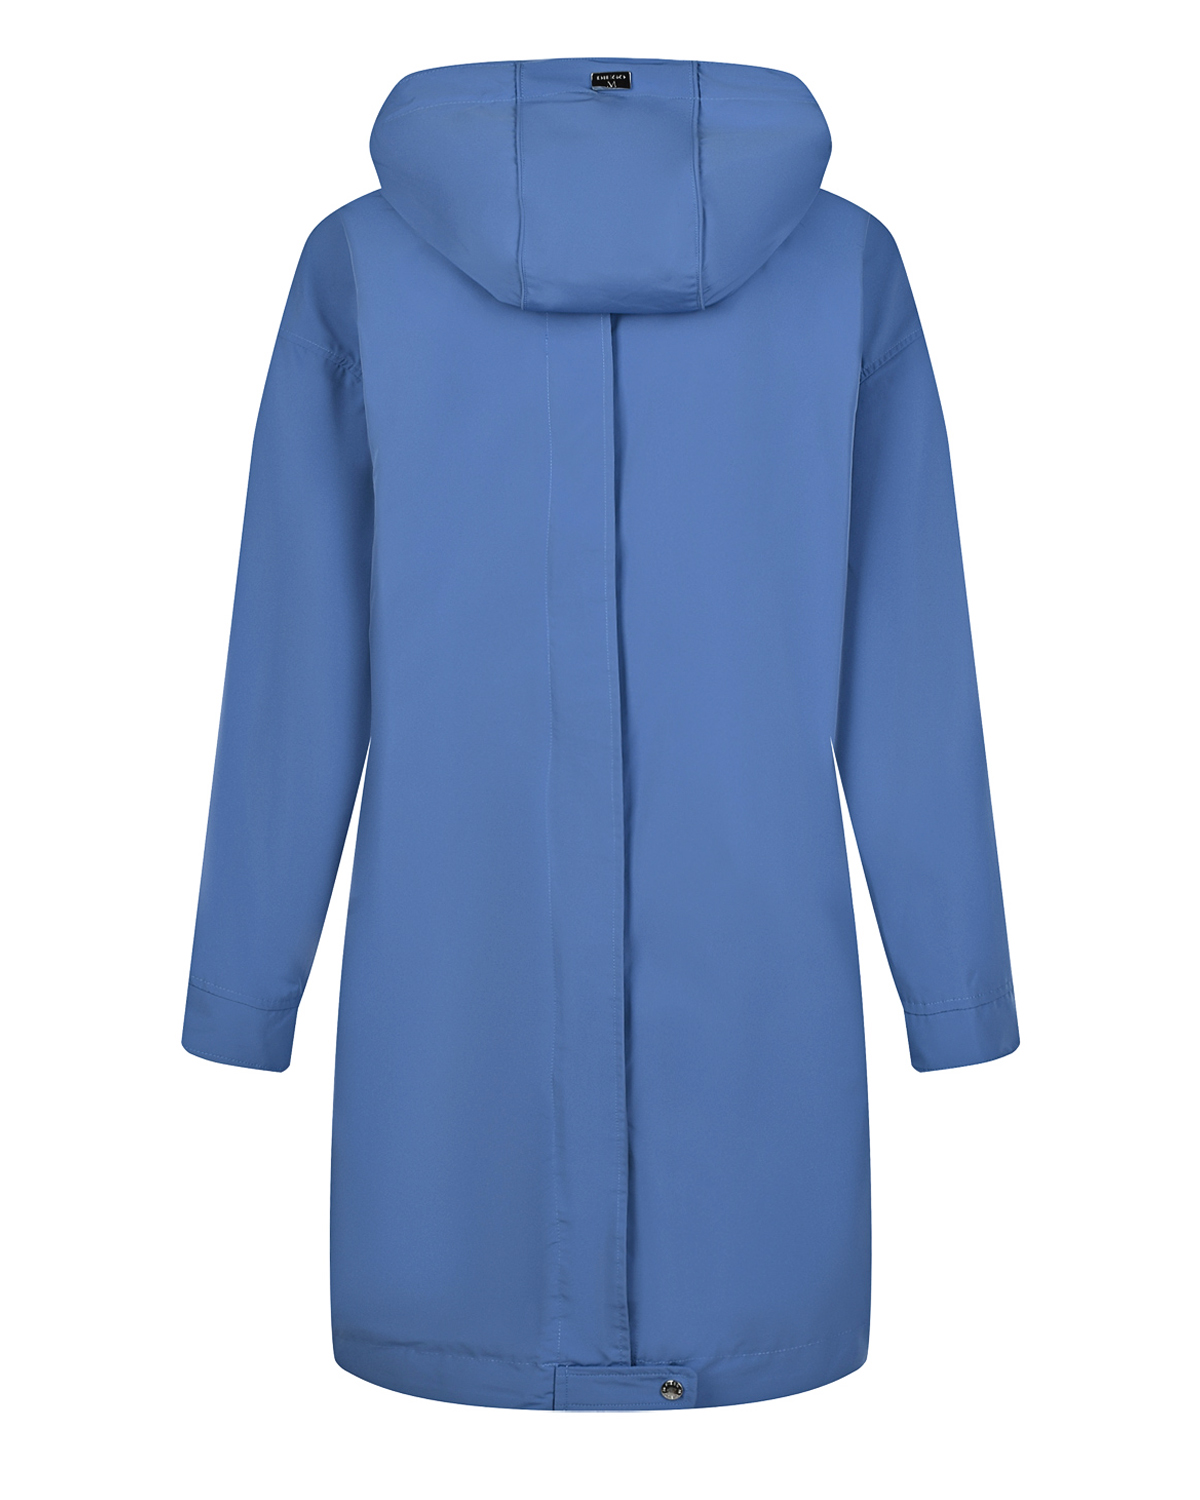 Голубое стеганое пальто с капюшоном Diego M, размер 46, цвет голубой - фото 5